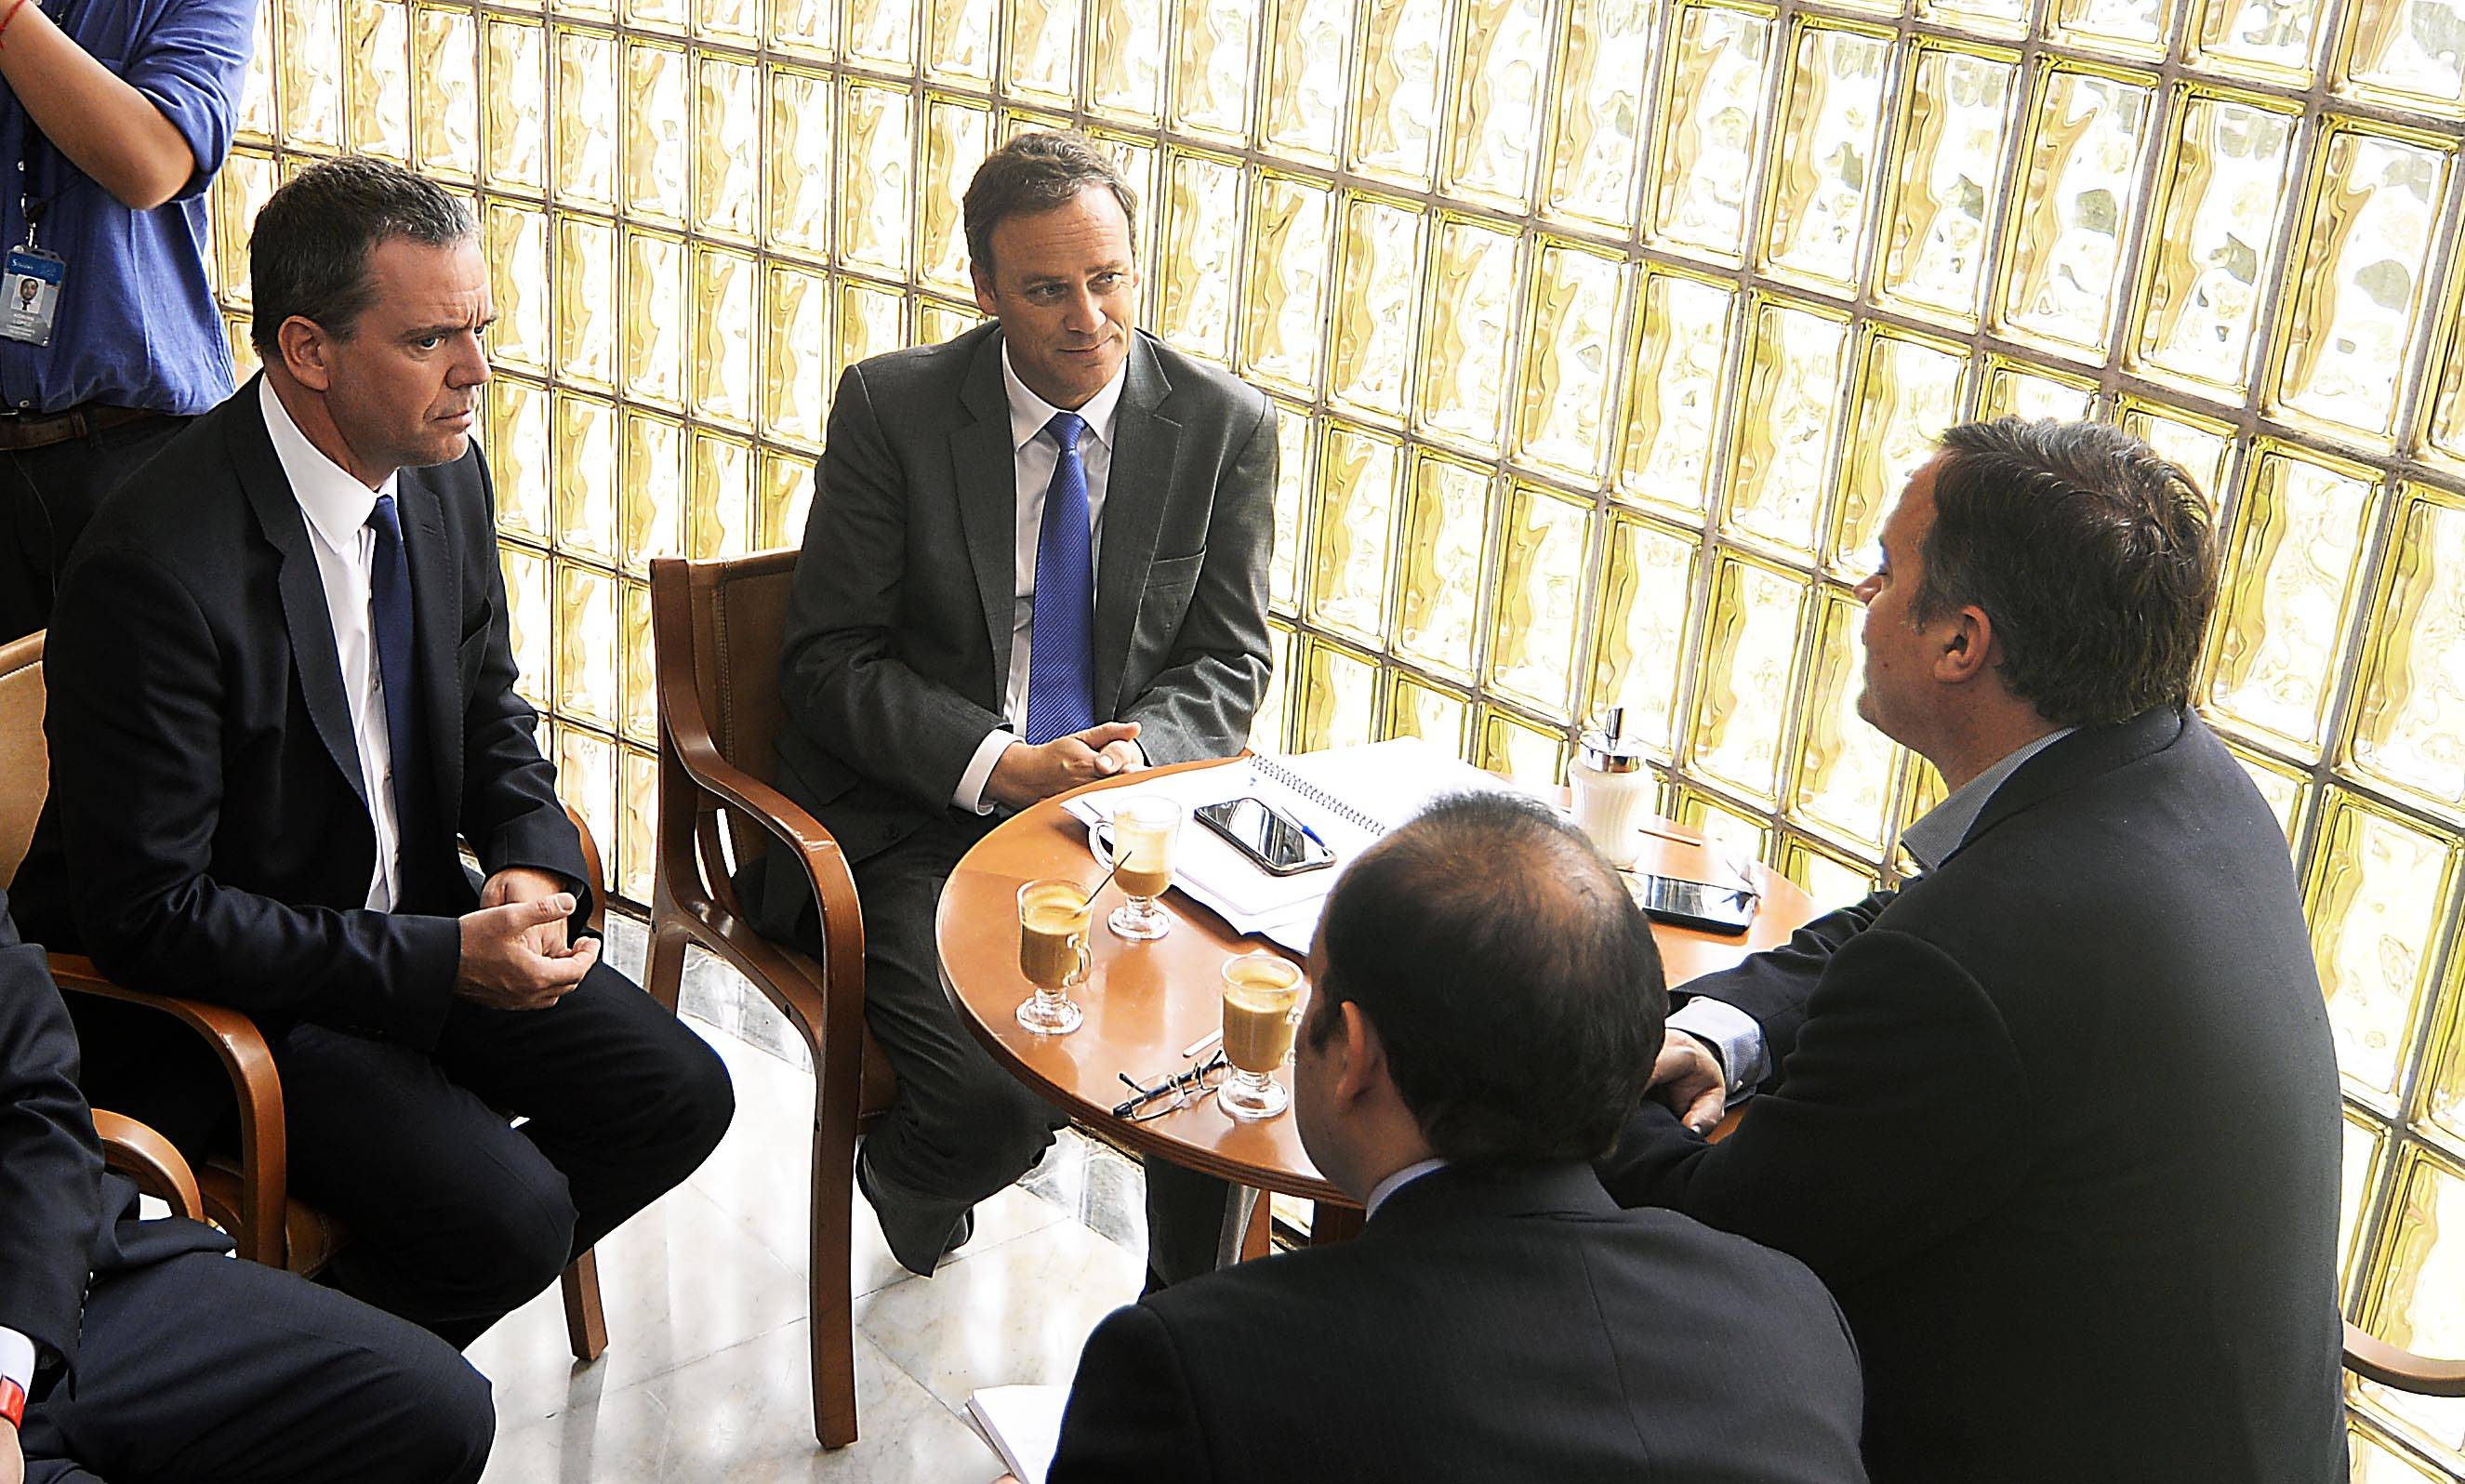 El ministro de Segpres, Felipe Ward, al fondo, conversa con los parlamentarios. Créditos: Agencia Uno